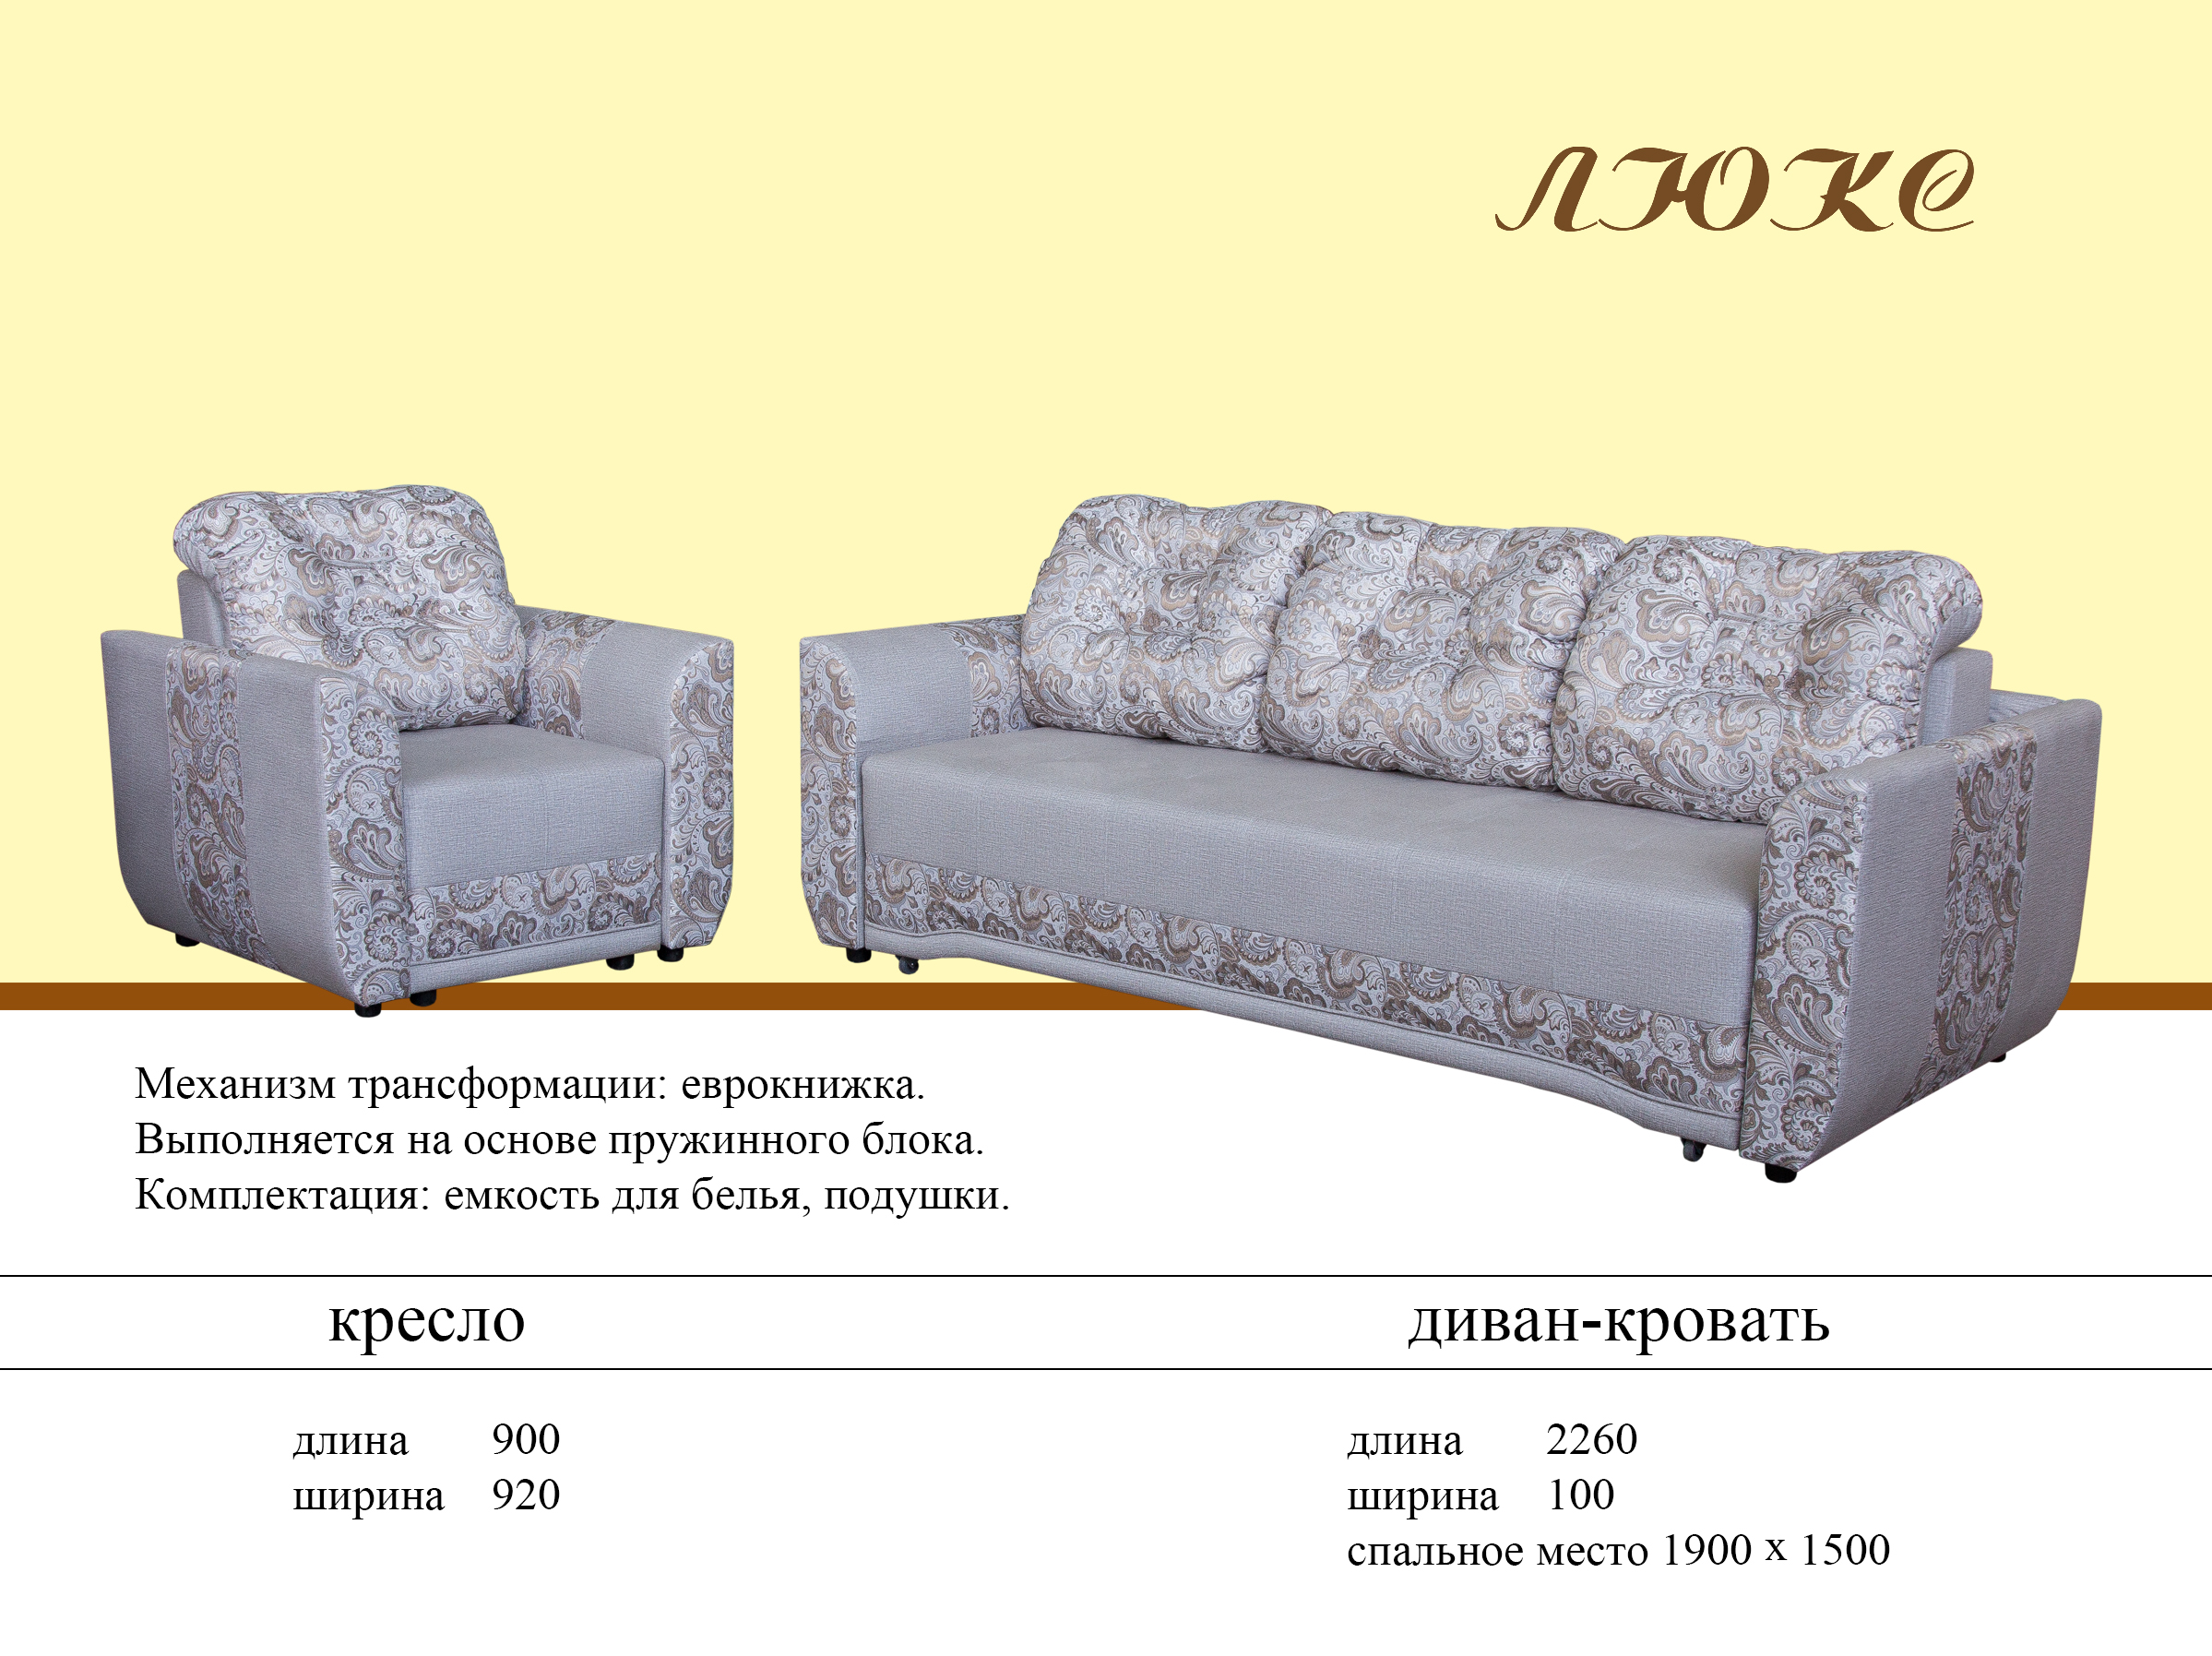 Lux мебель оптом от производителя каталог бесплатная доставка